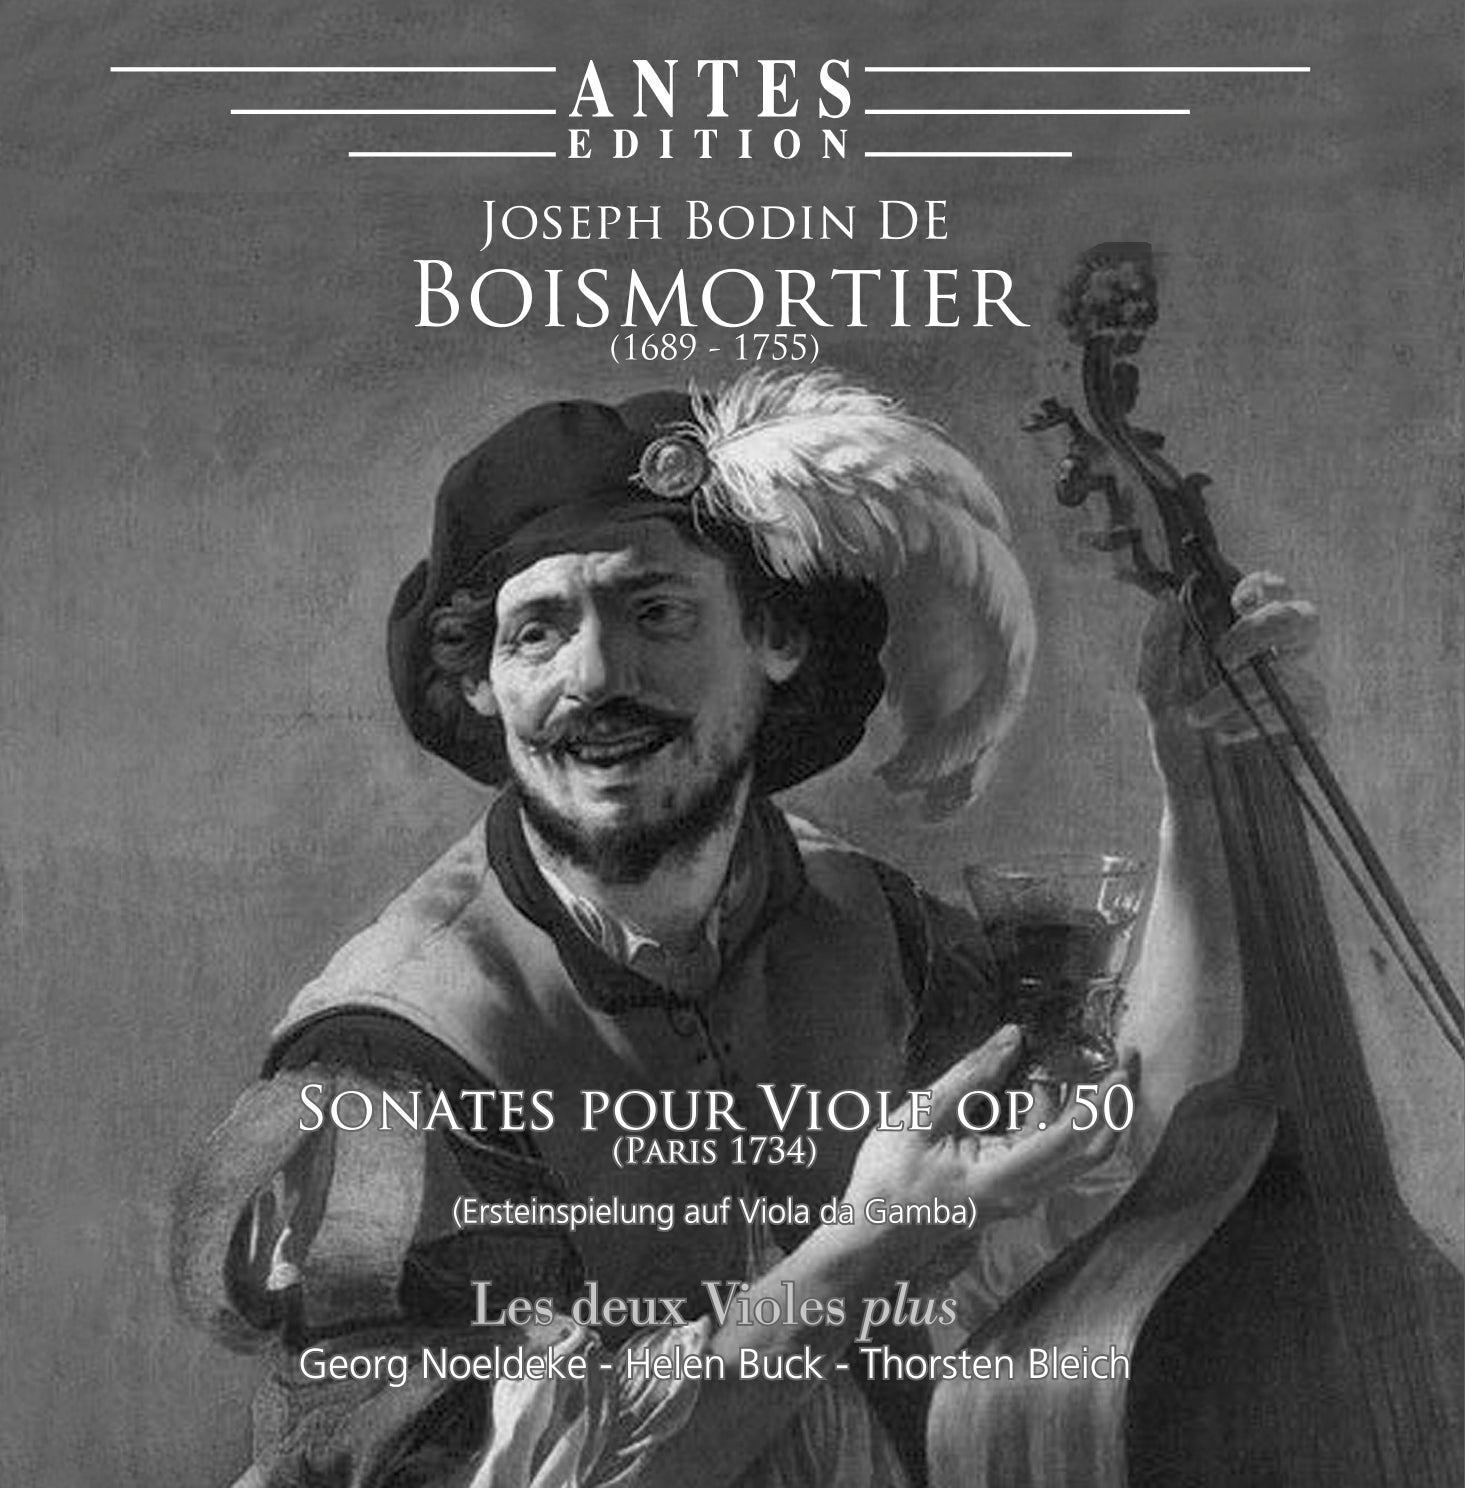 Boismortier: Sonates pour Viole, Op. 50 (Paris 1734) / Les deux Violes